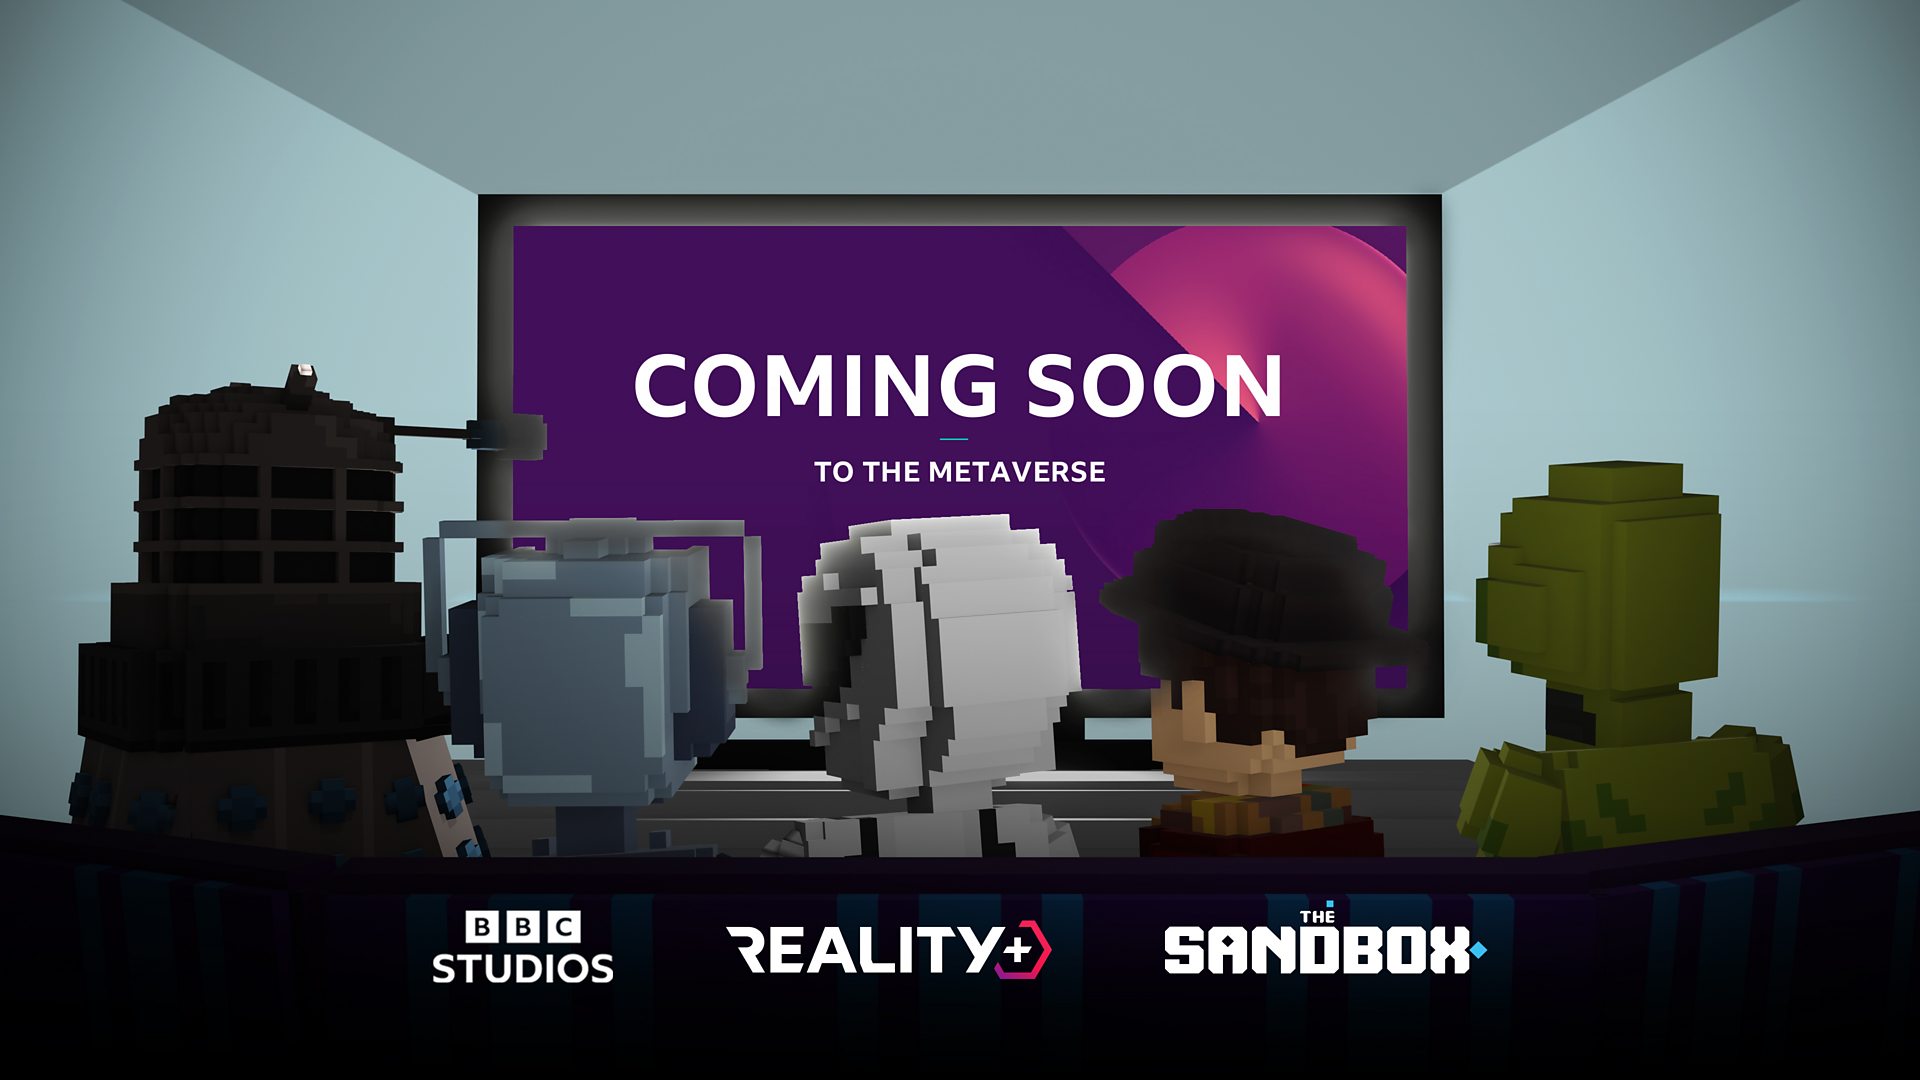 BBC Studios schließt sich Reality+ an, um Metaverse-Erlebnisse zu ermöglichen